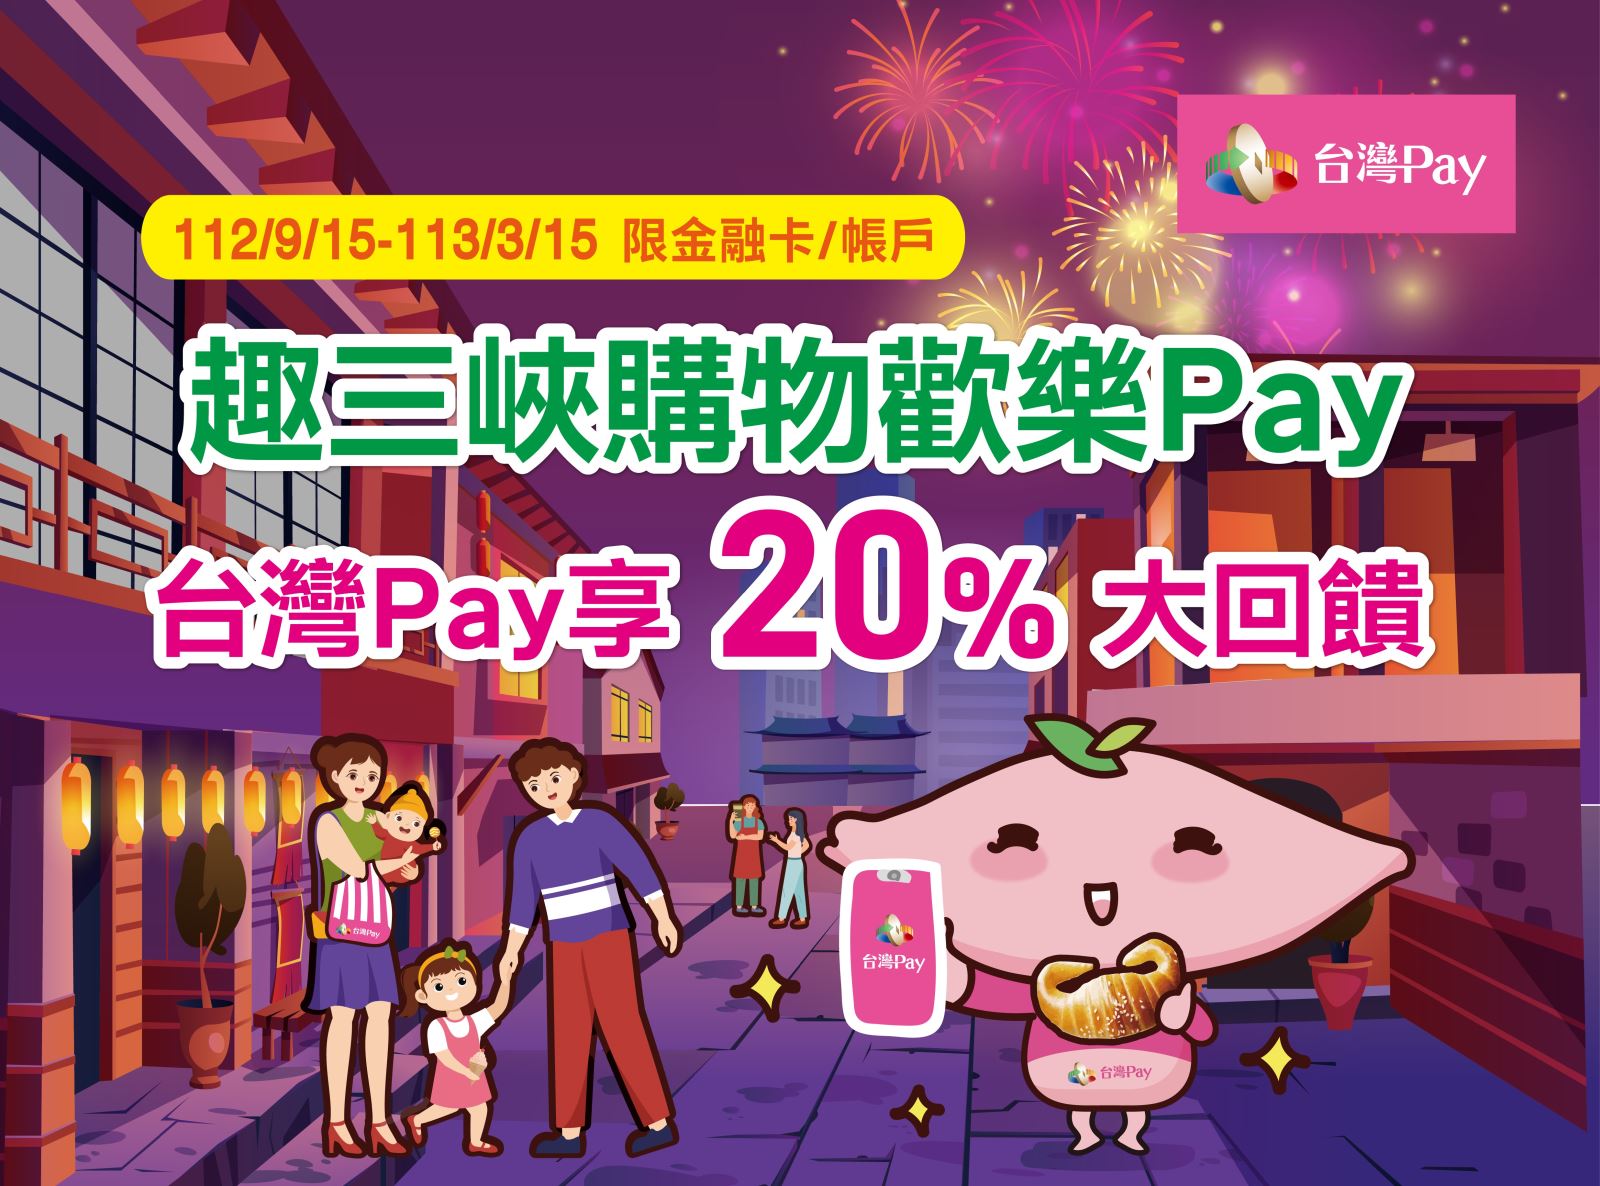 趣三峽購物歡樂Pay 台灣Pay享20%大回饋